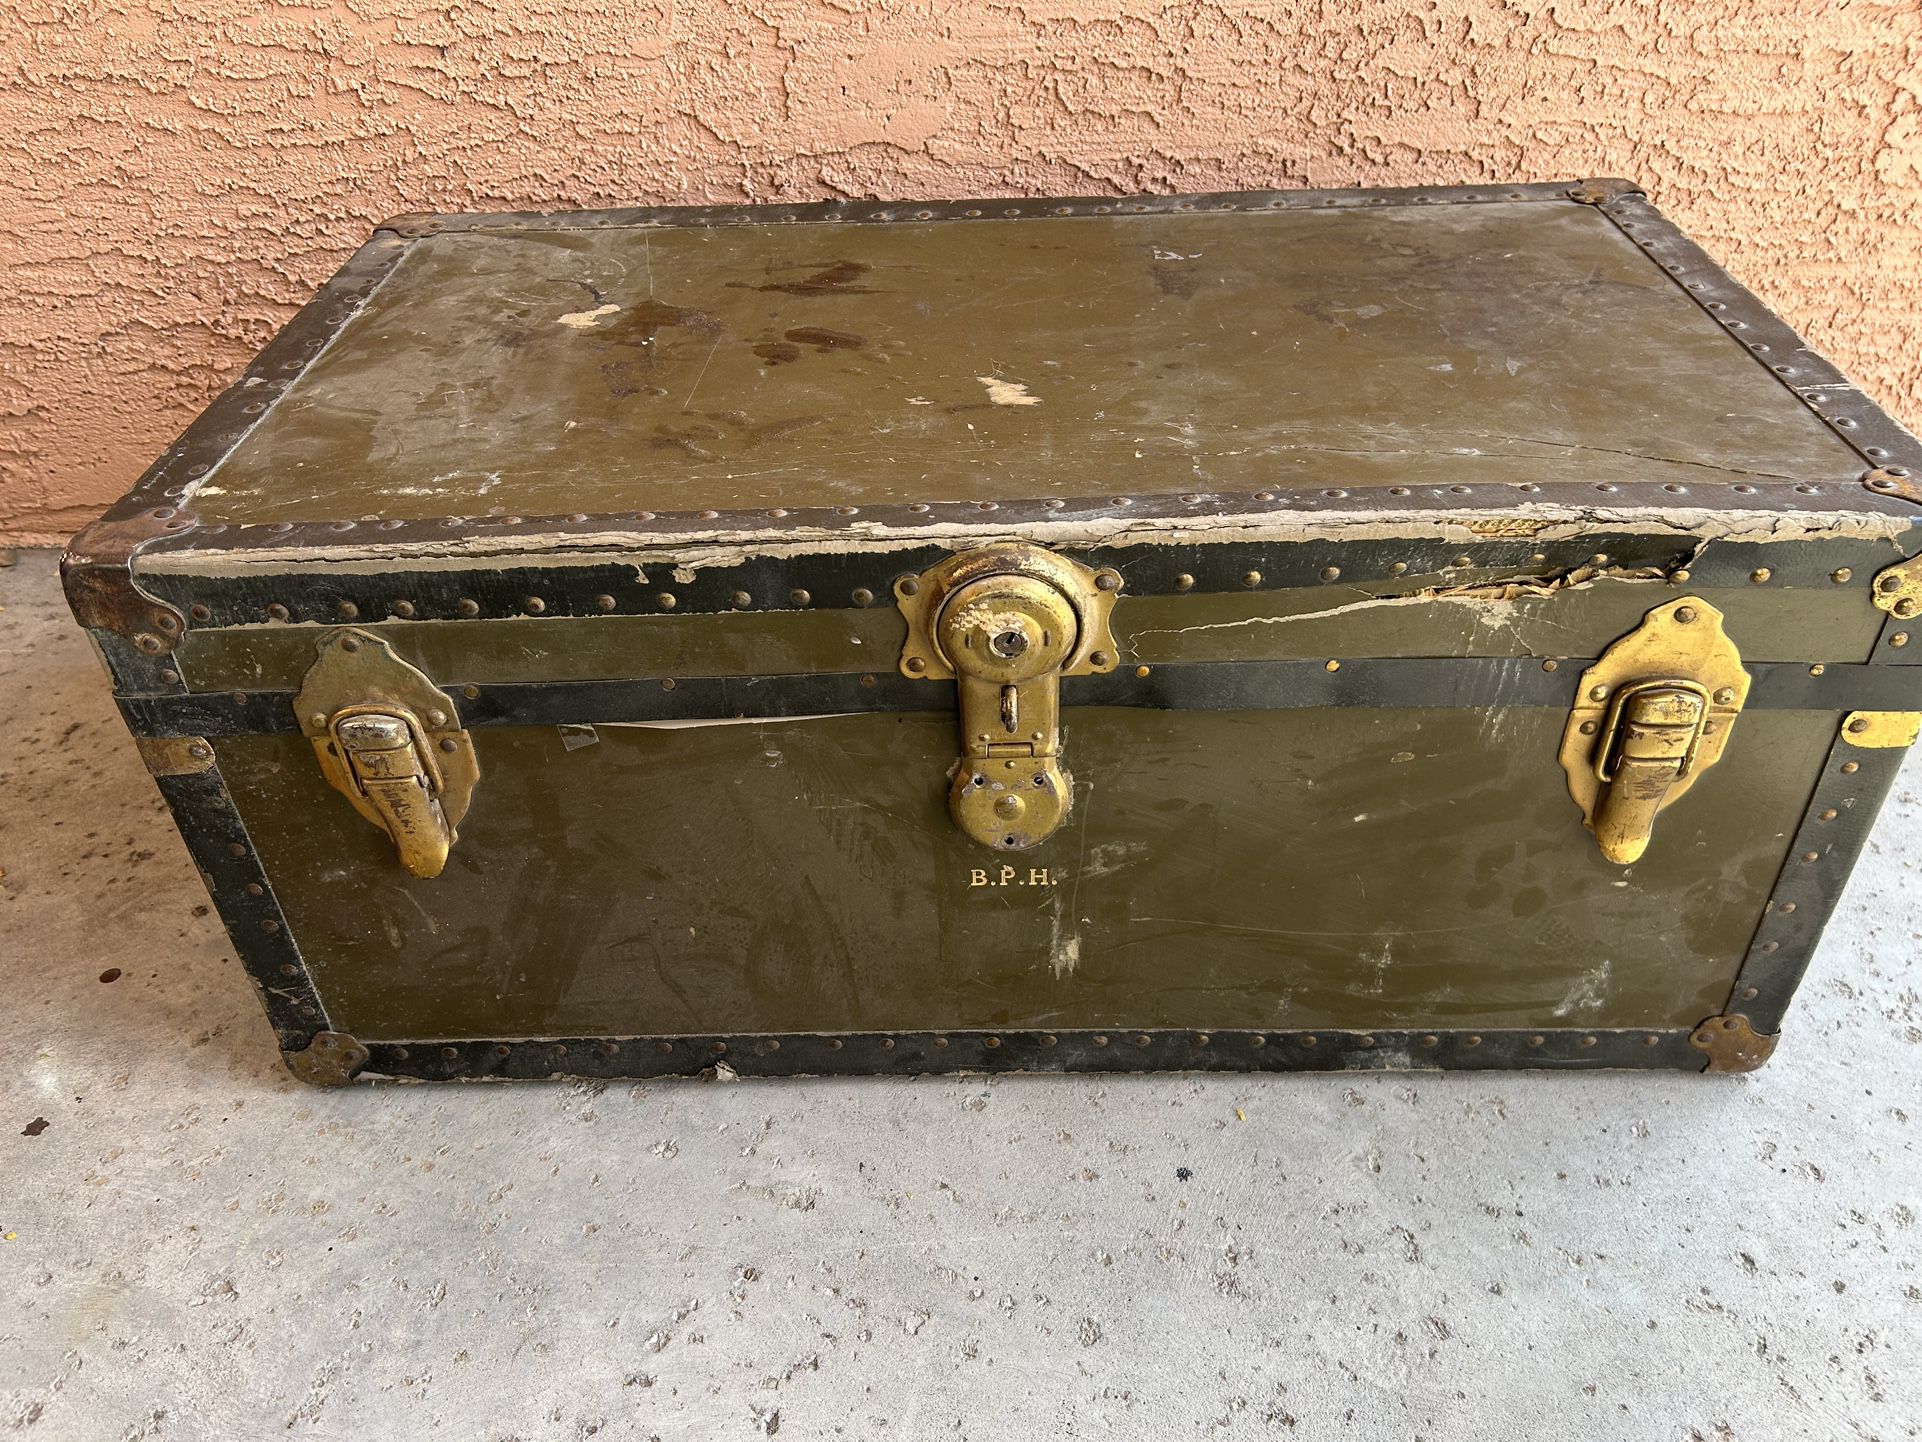 Vintage Antique Storage Trunk 